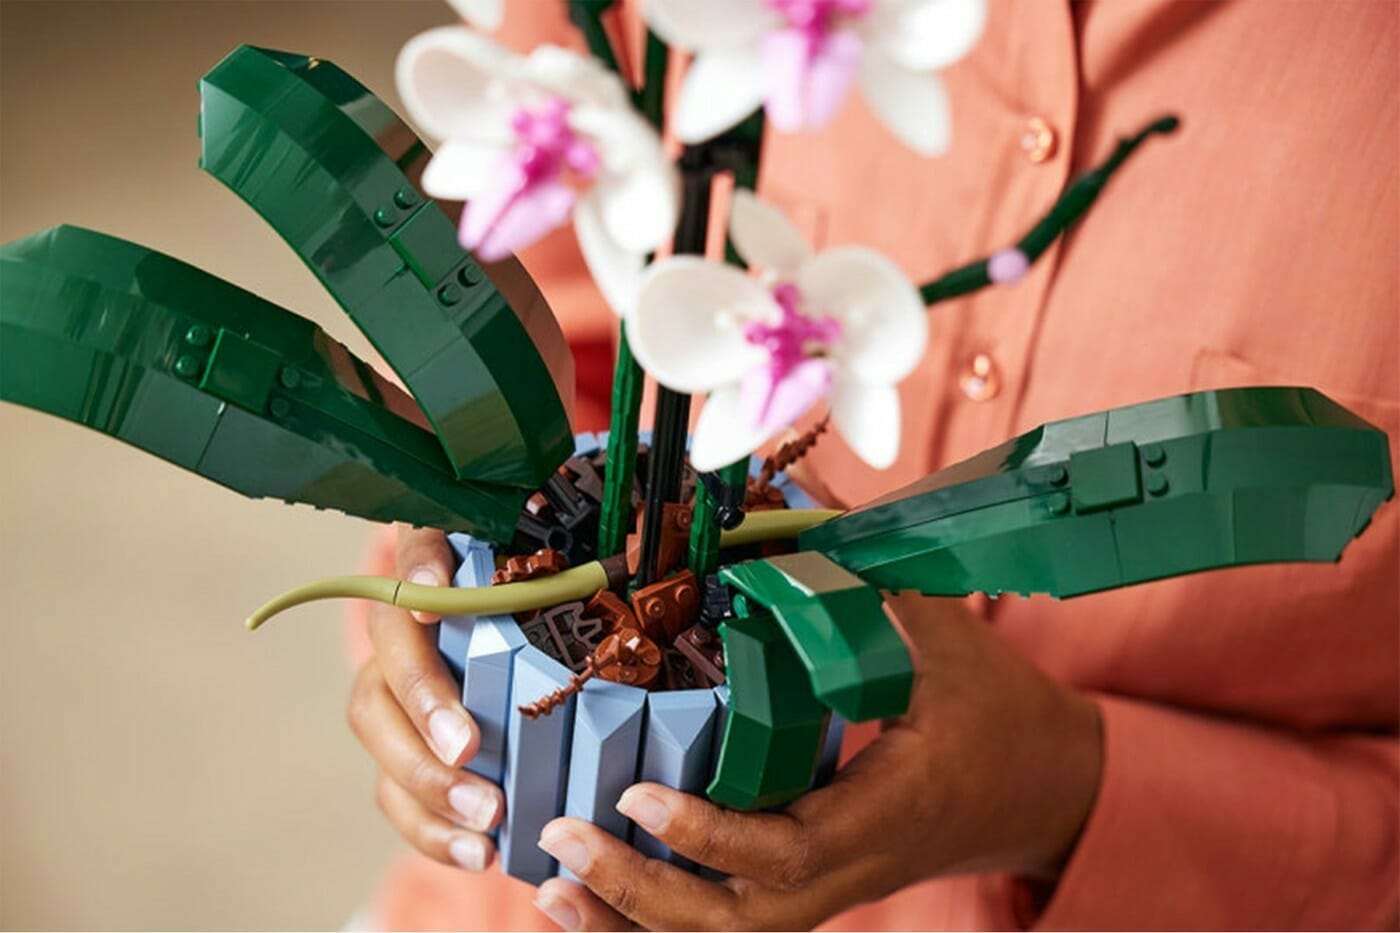 LEGO breidt de collectie bloemen en planten uit